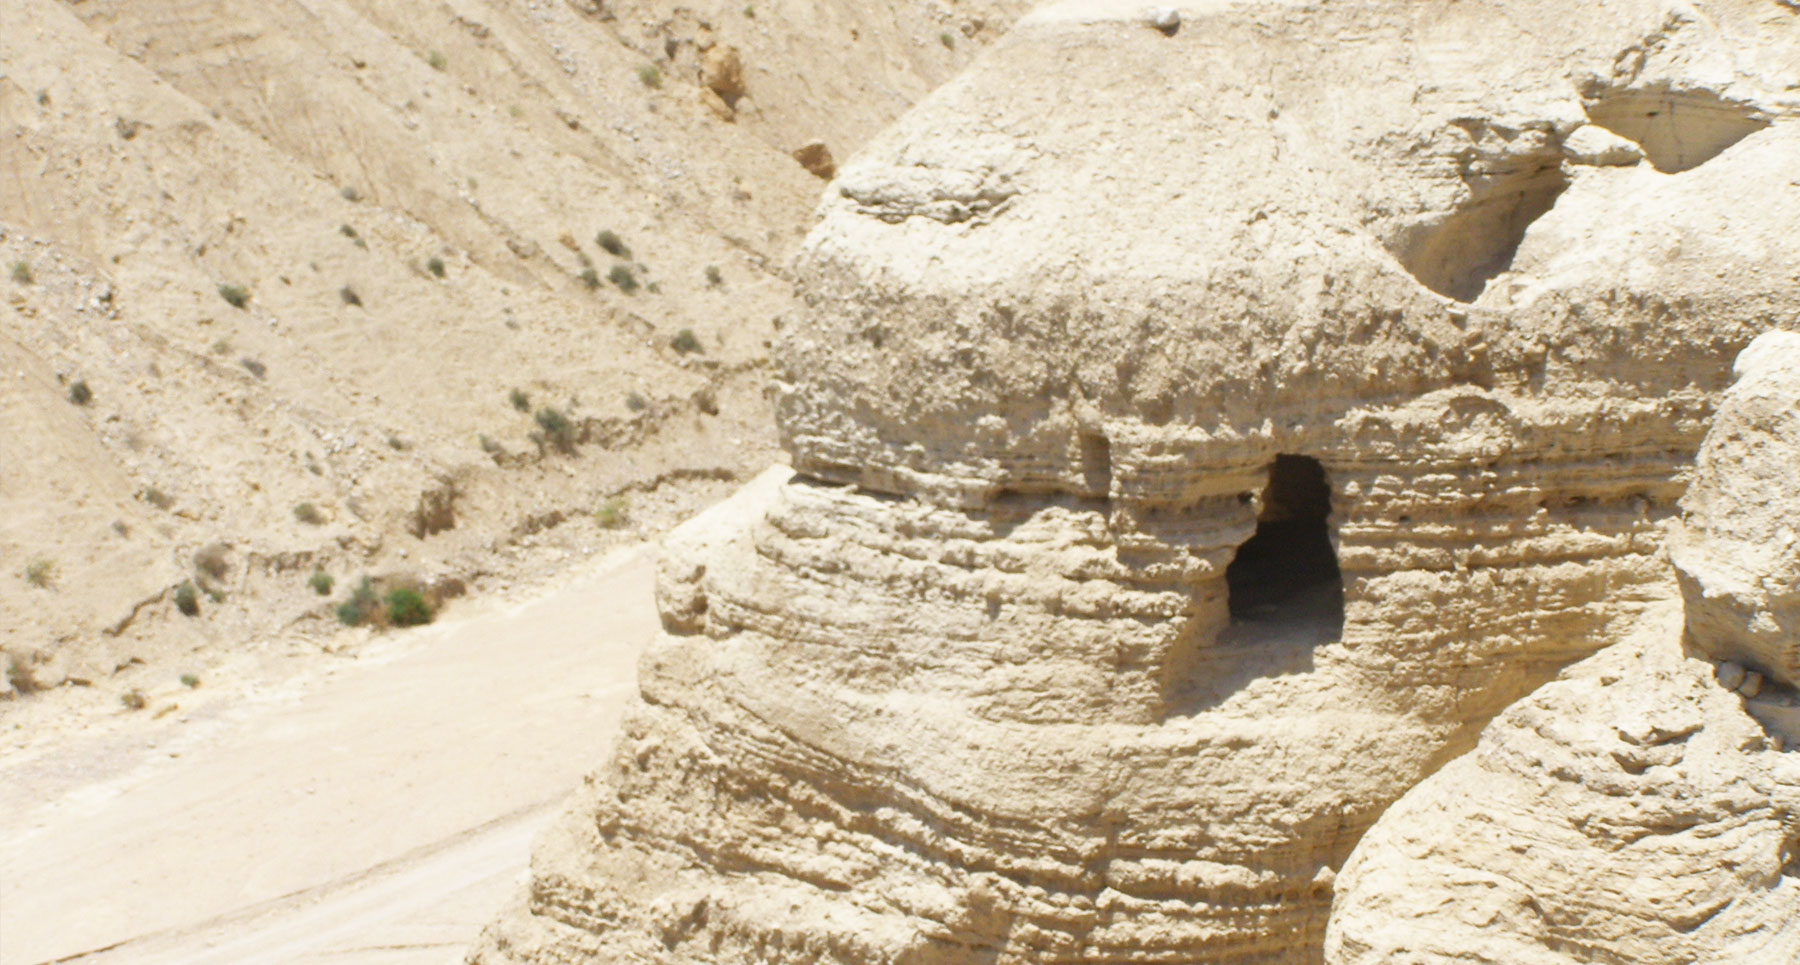 Qumran cave 4 (below the Qumran site)